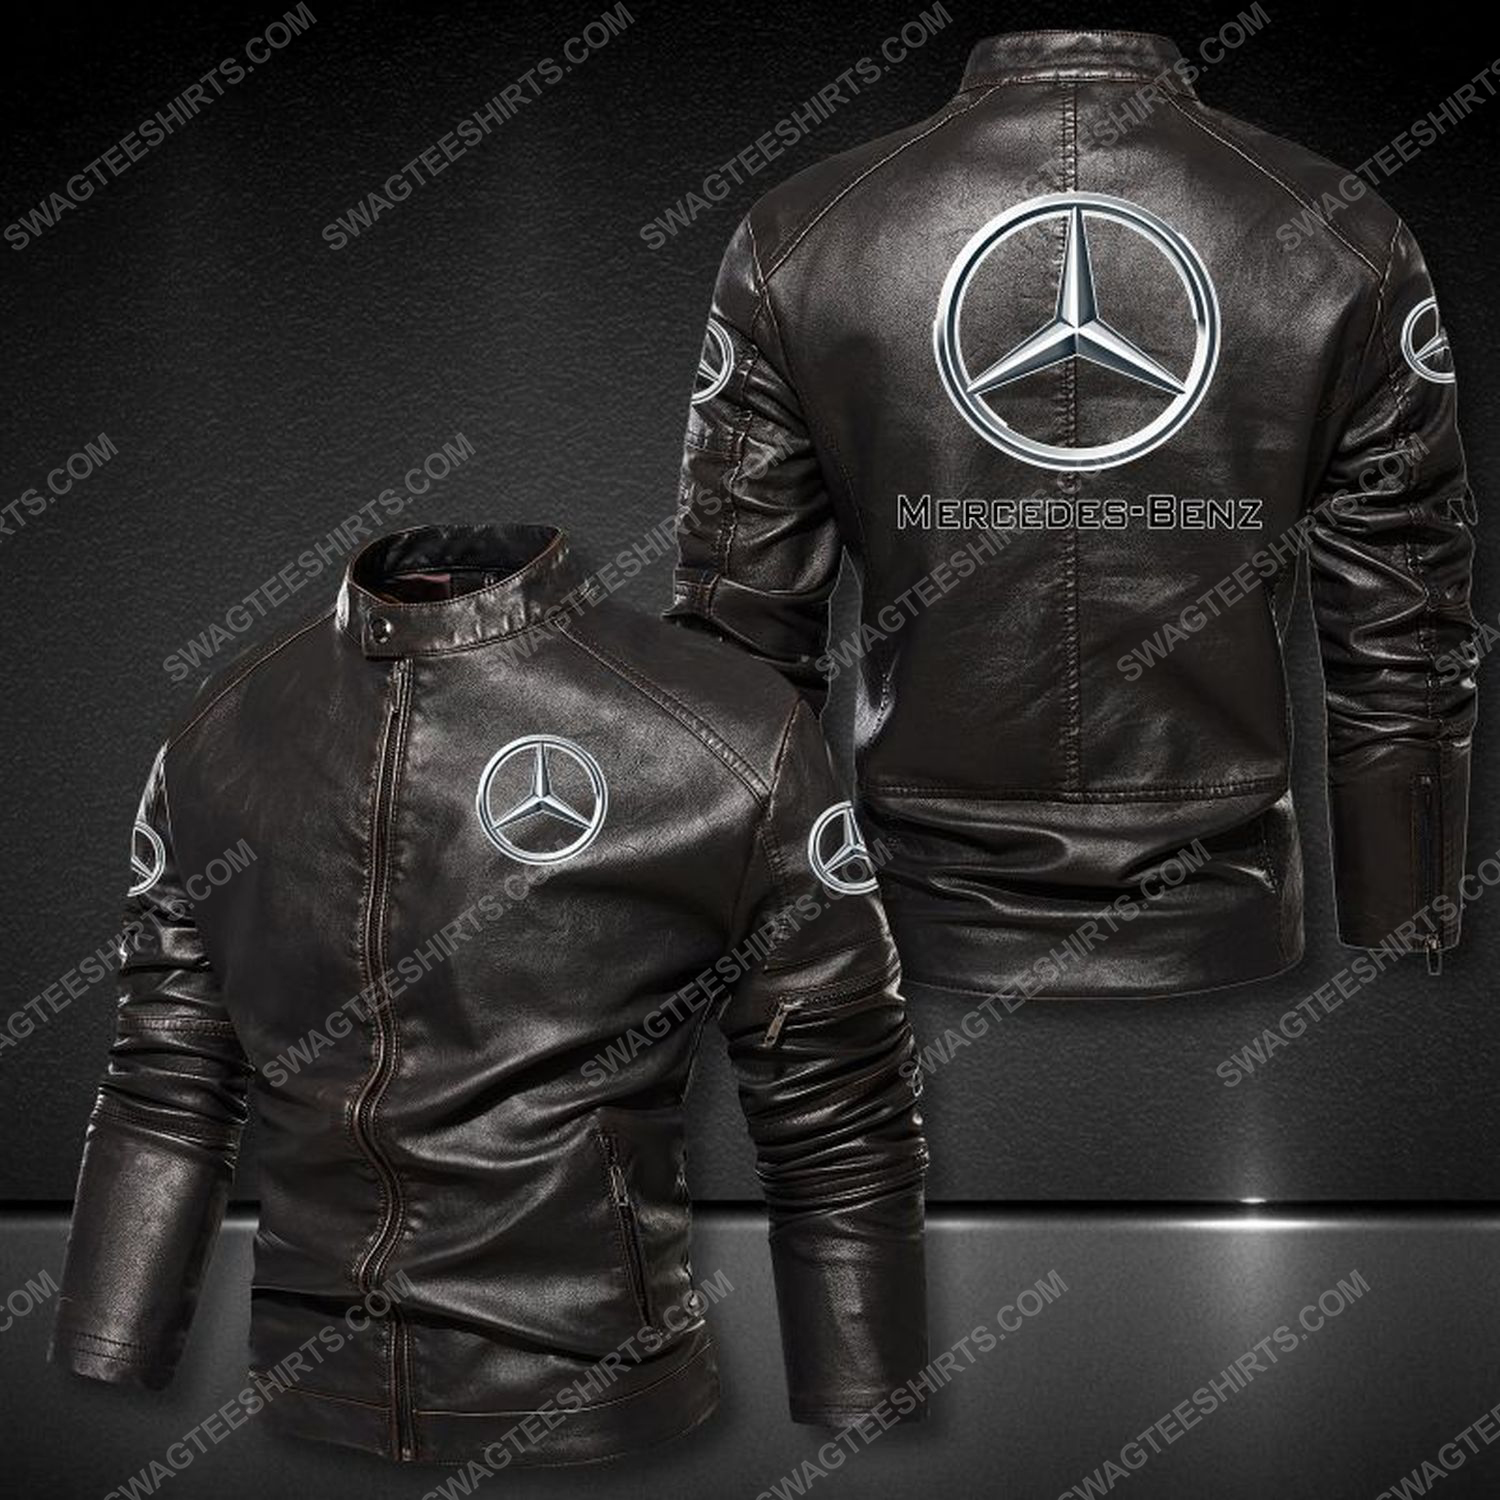 Mercedes-benz sports car leather jacket 1 - Copy